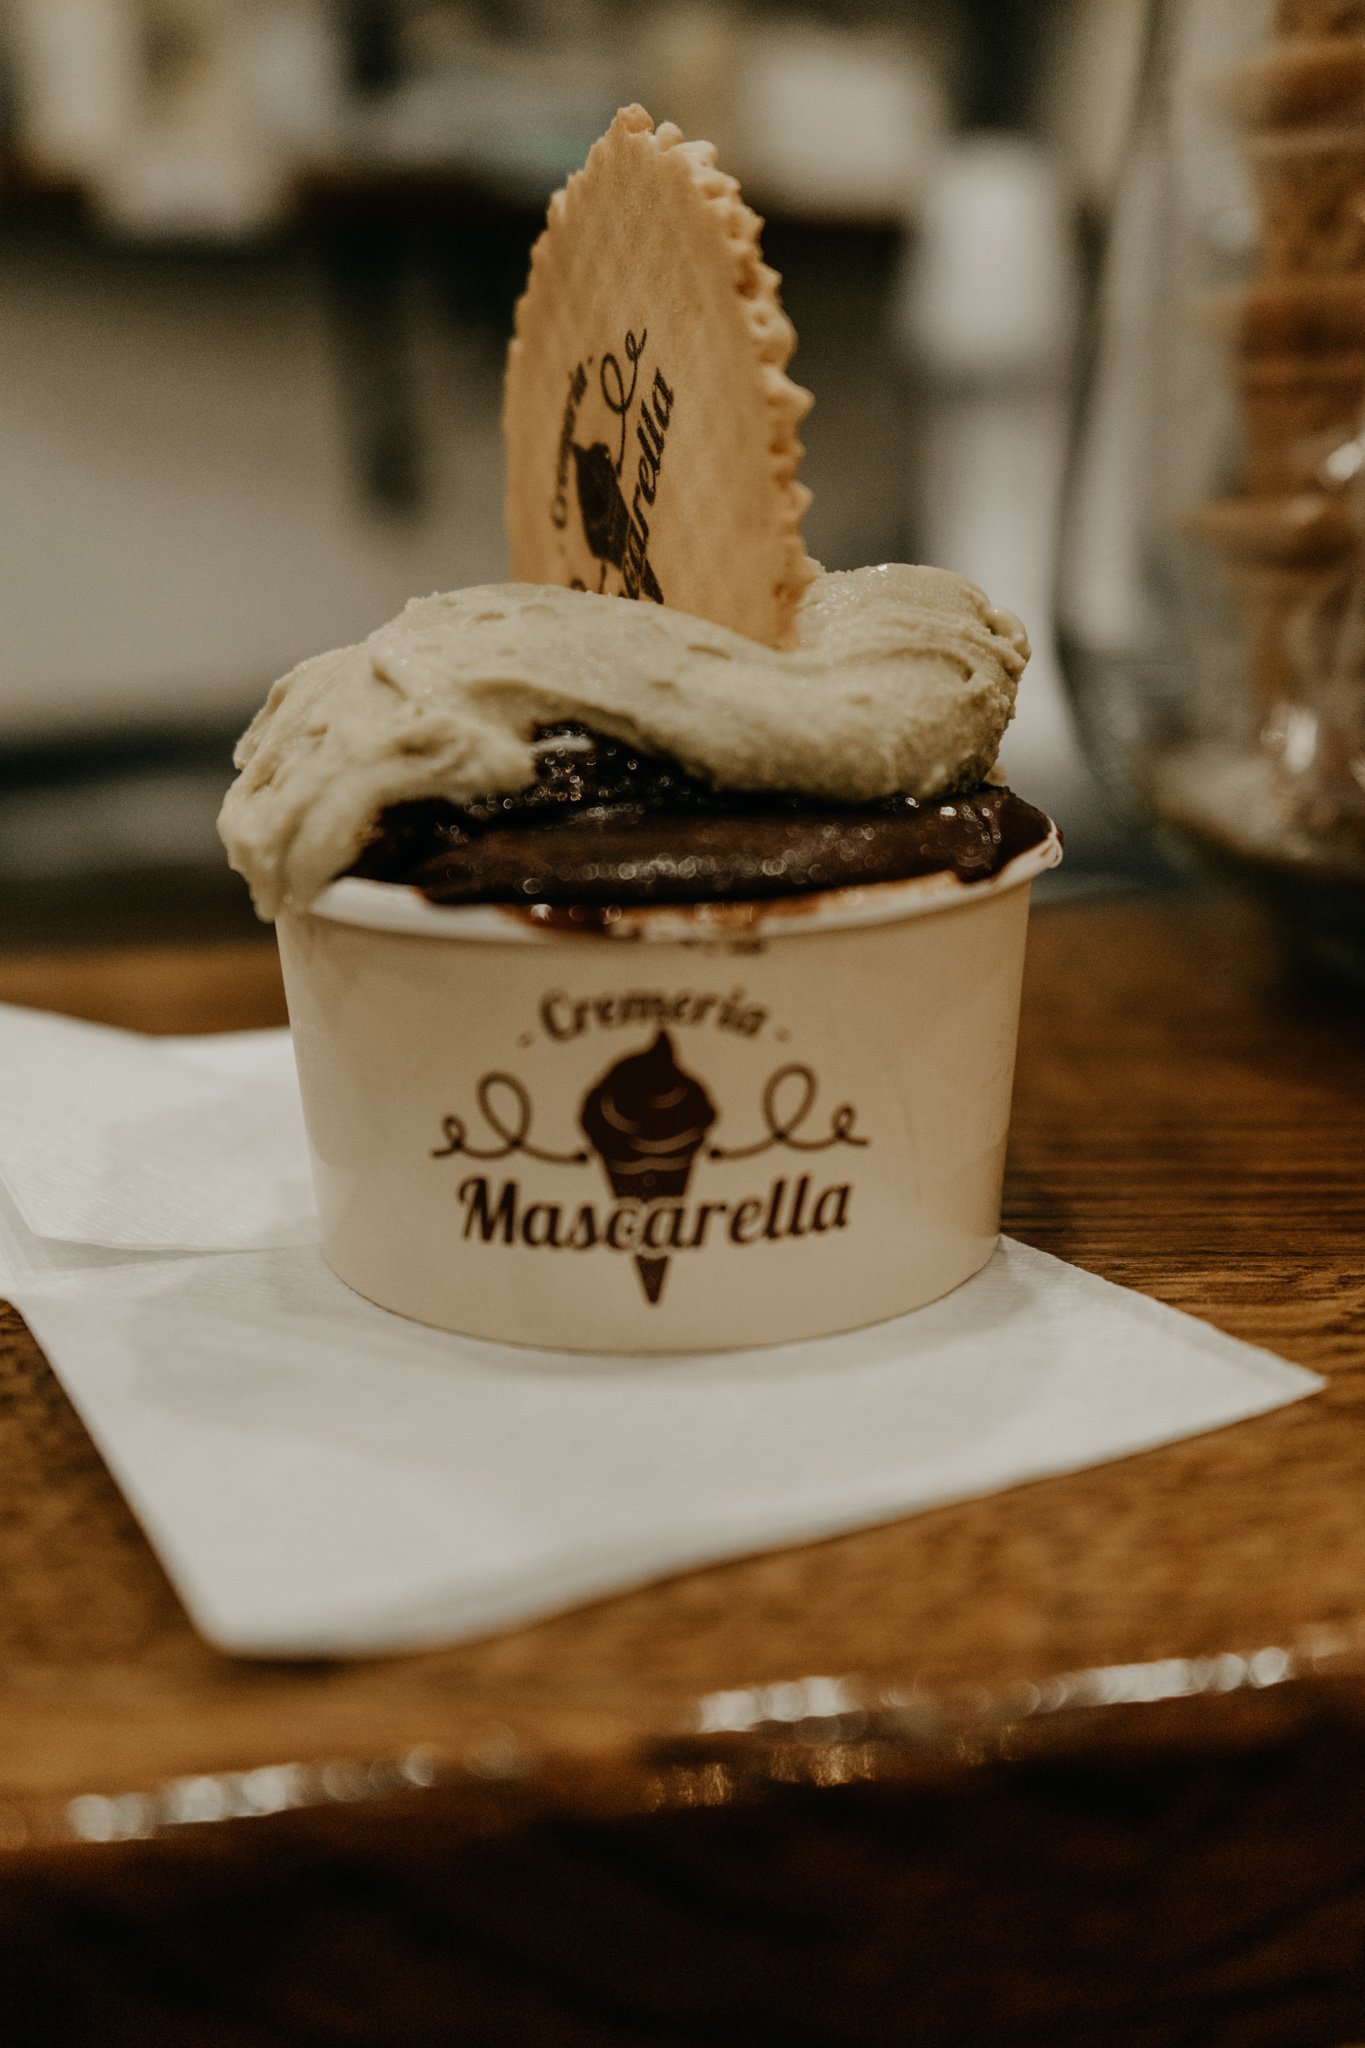 Cremeria Mascarella gelato in Bologna, Italy